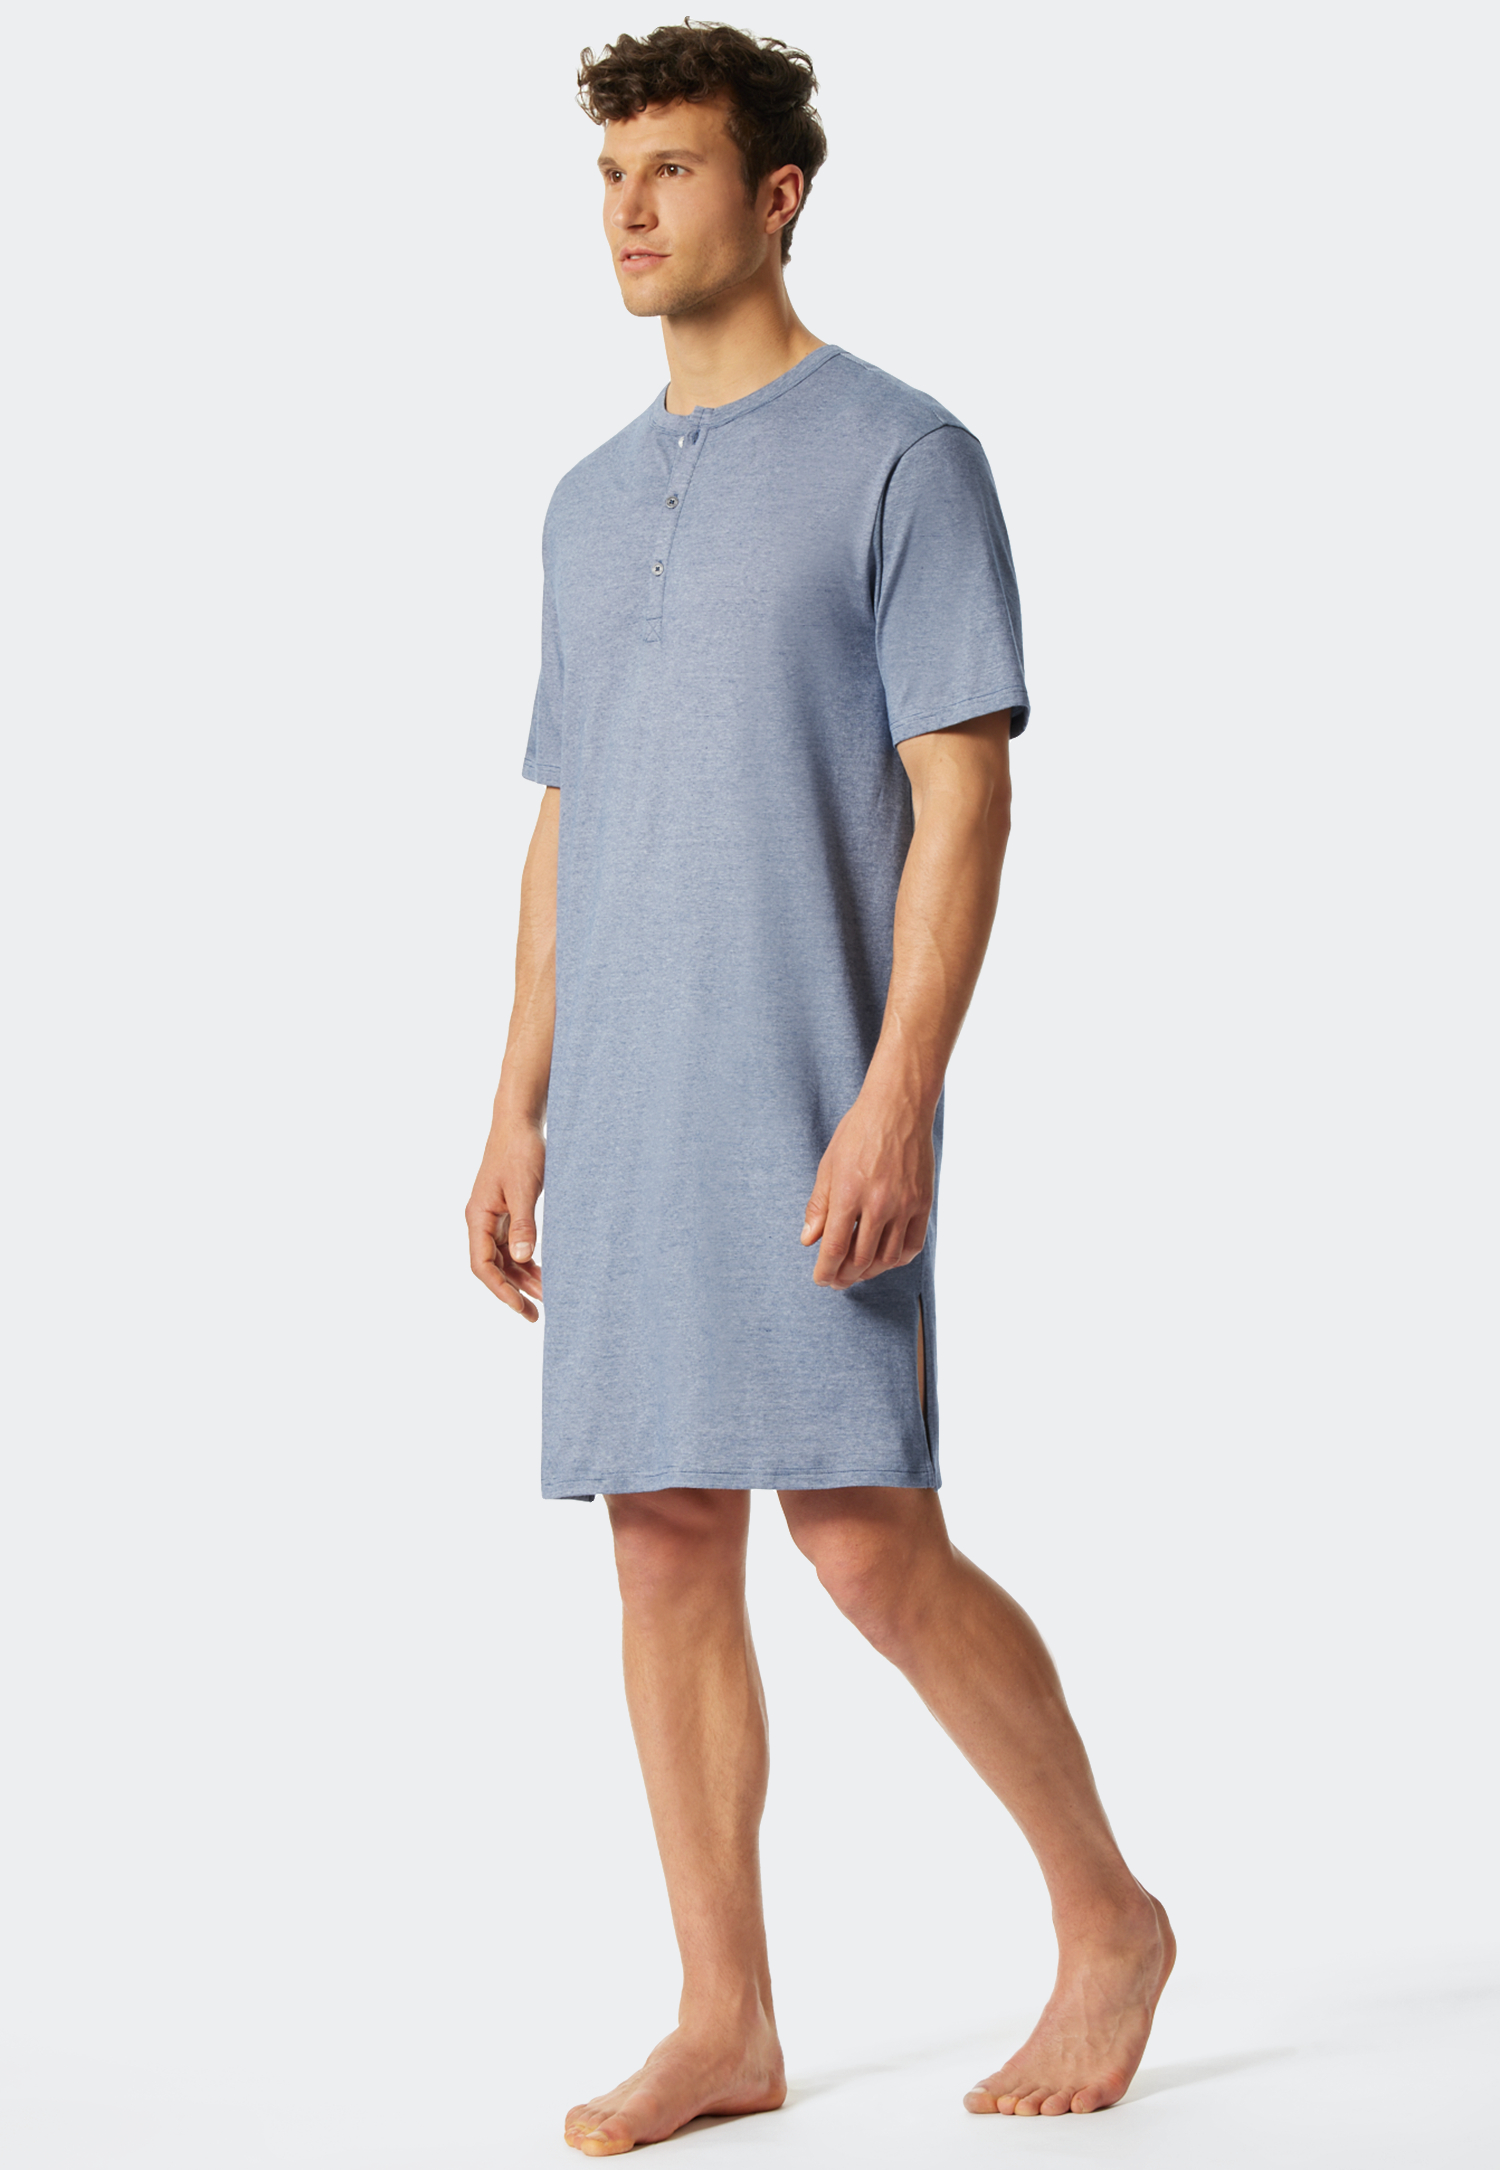 Image of Nachthemd kurzarm Organic Cotton Serafino-Kragen geringelt blau-weiß - Fashion Nightwear 48